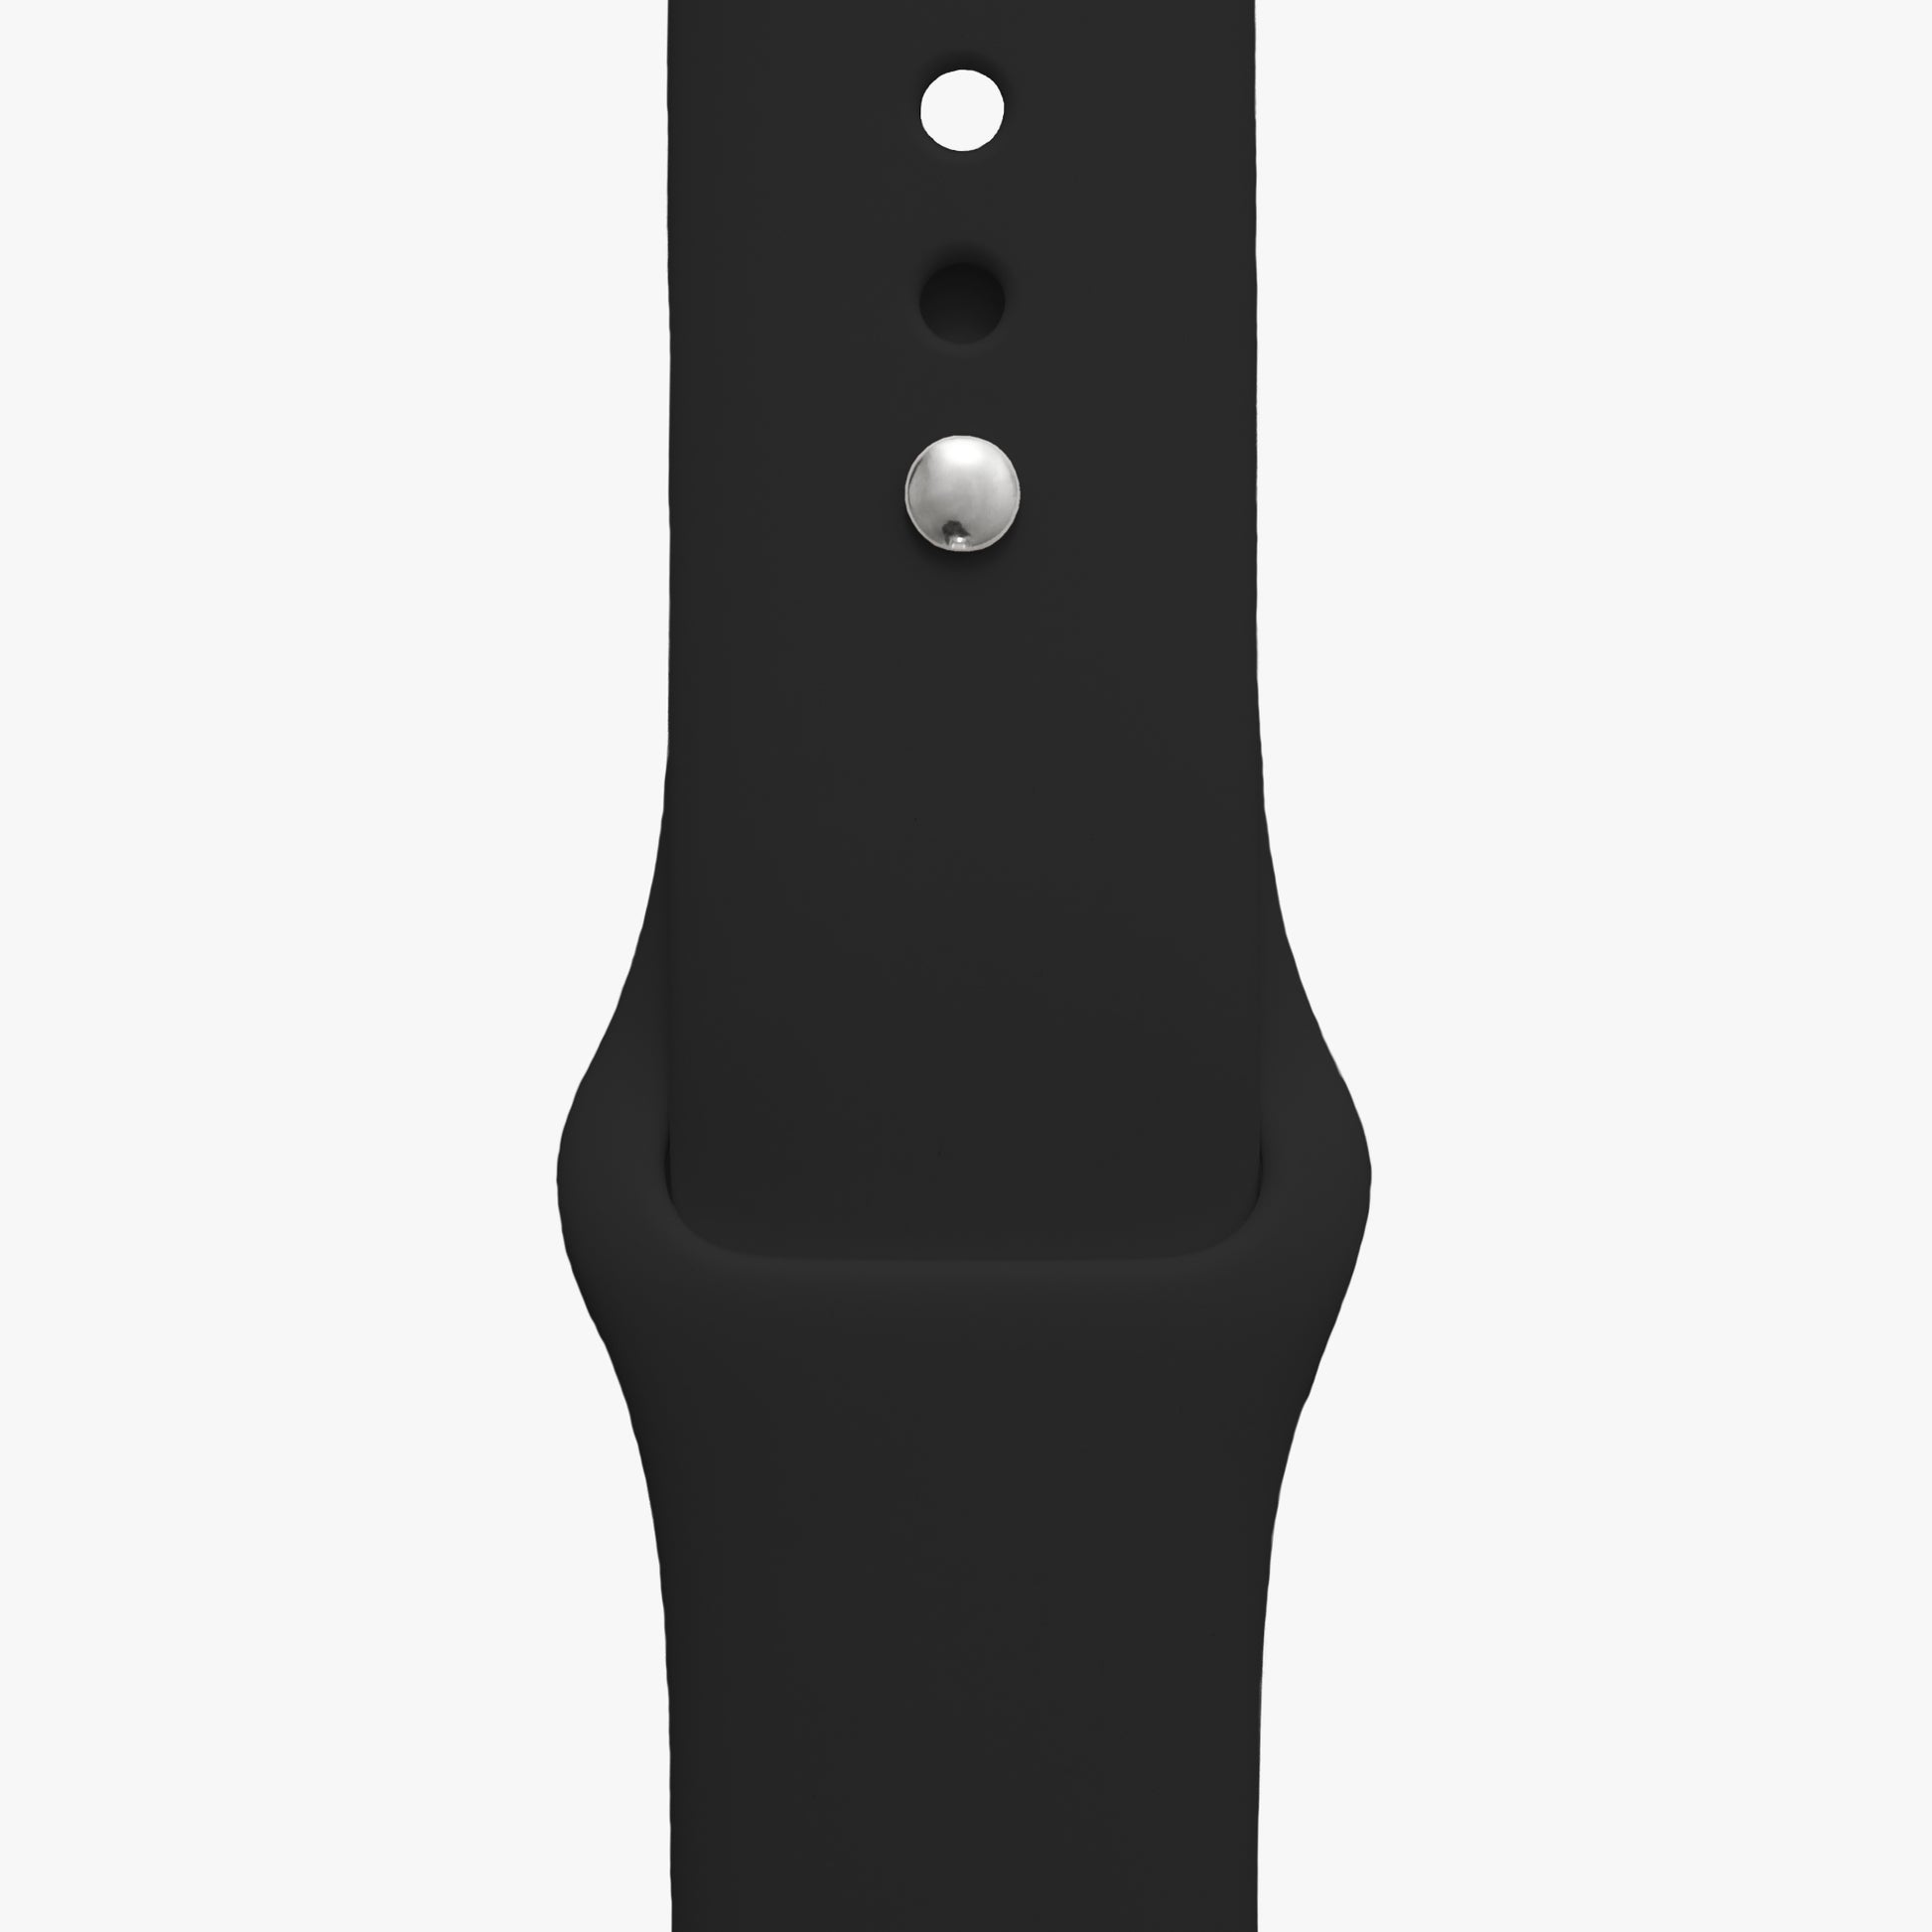 Sportarmband schwarz für Apple Watch - 2 Größen in Länge S/M + M/L